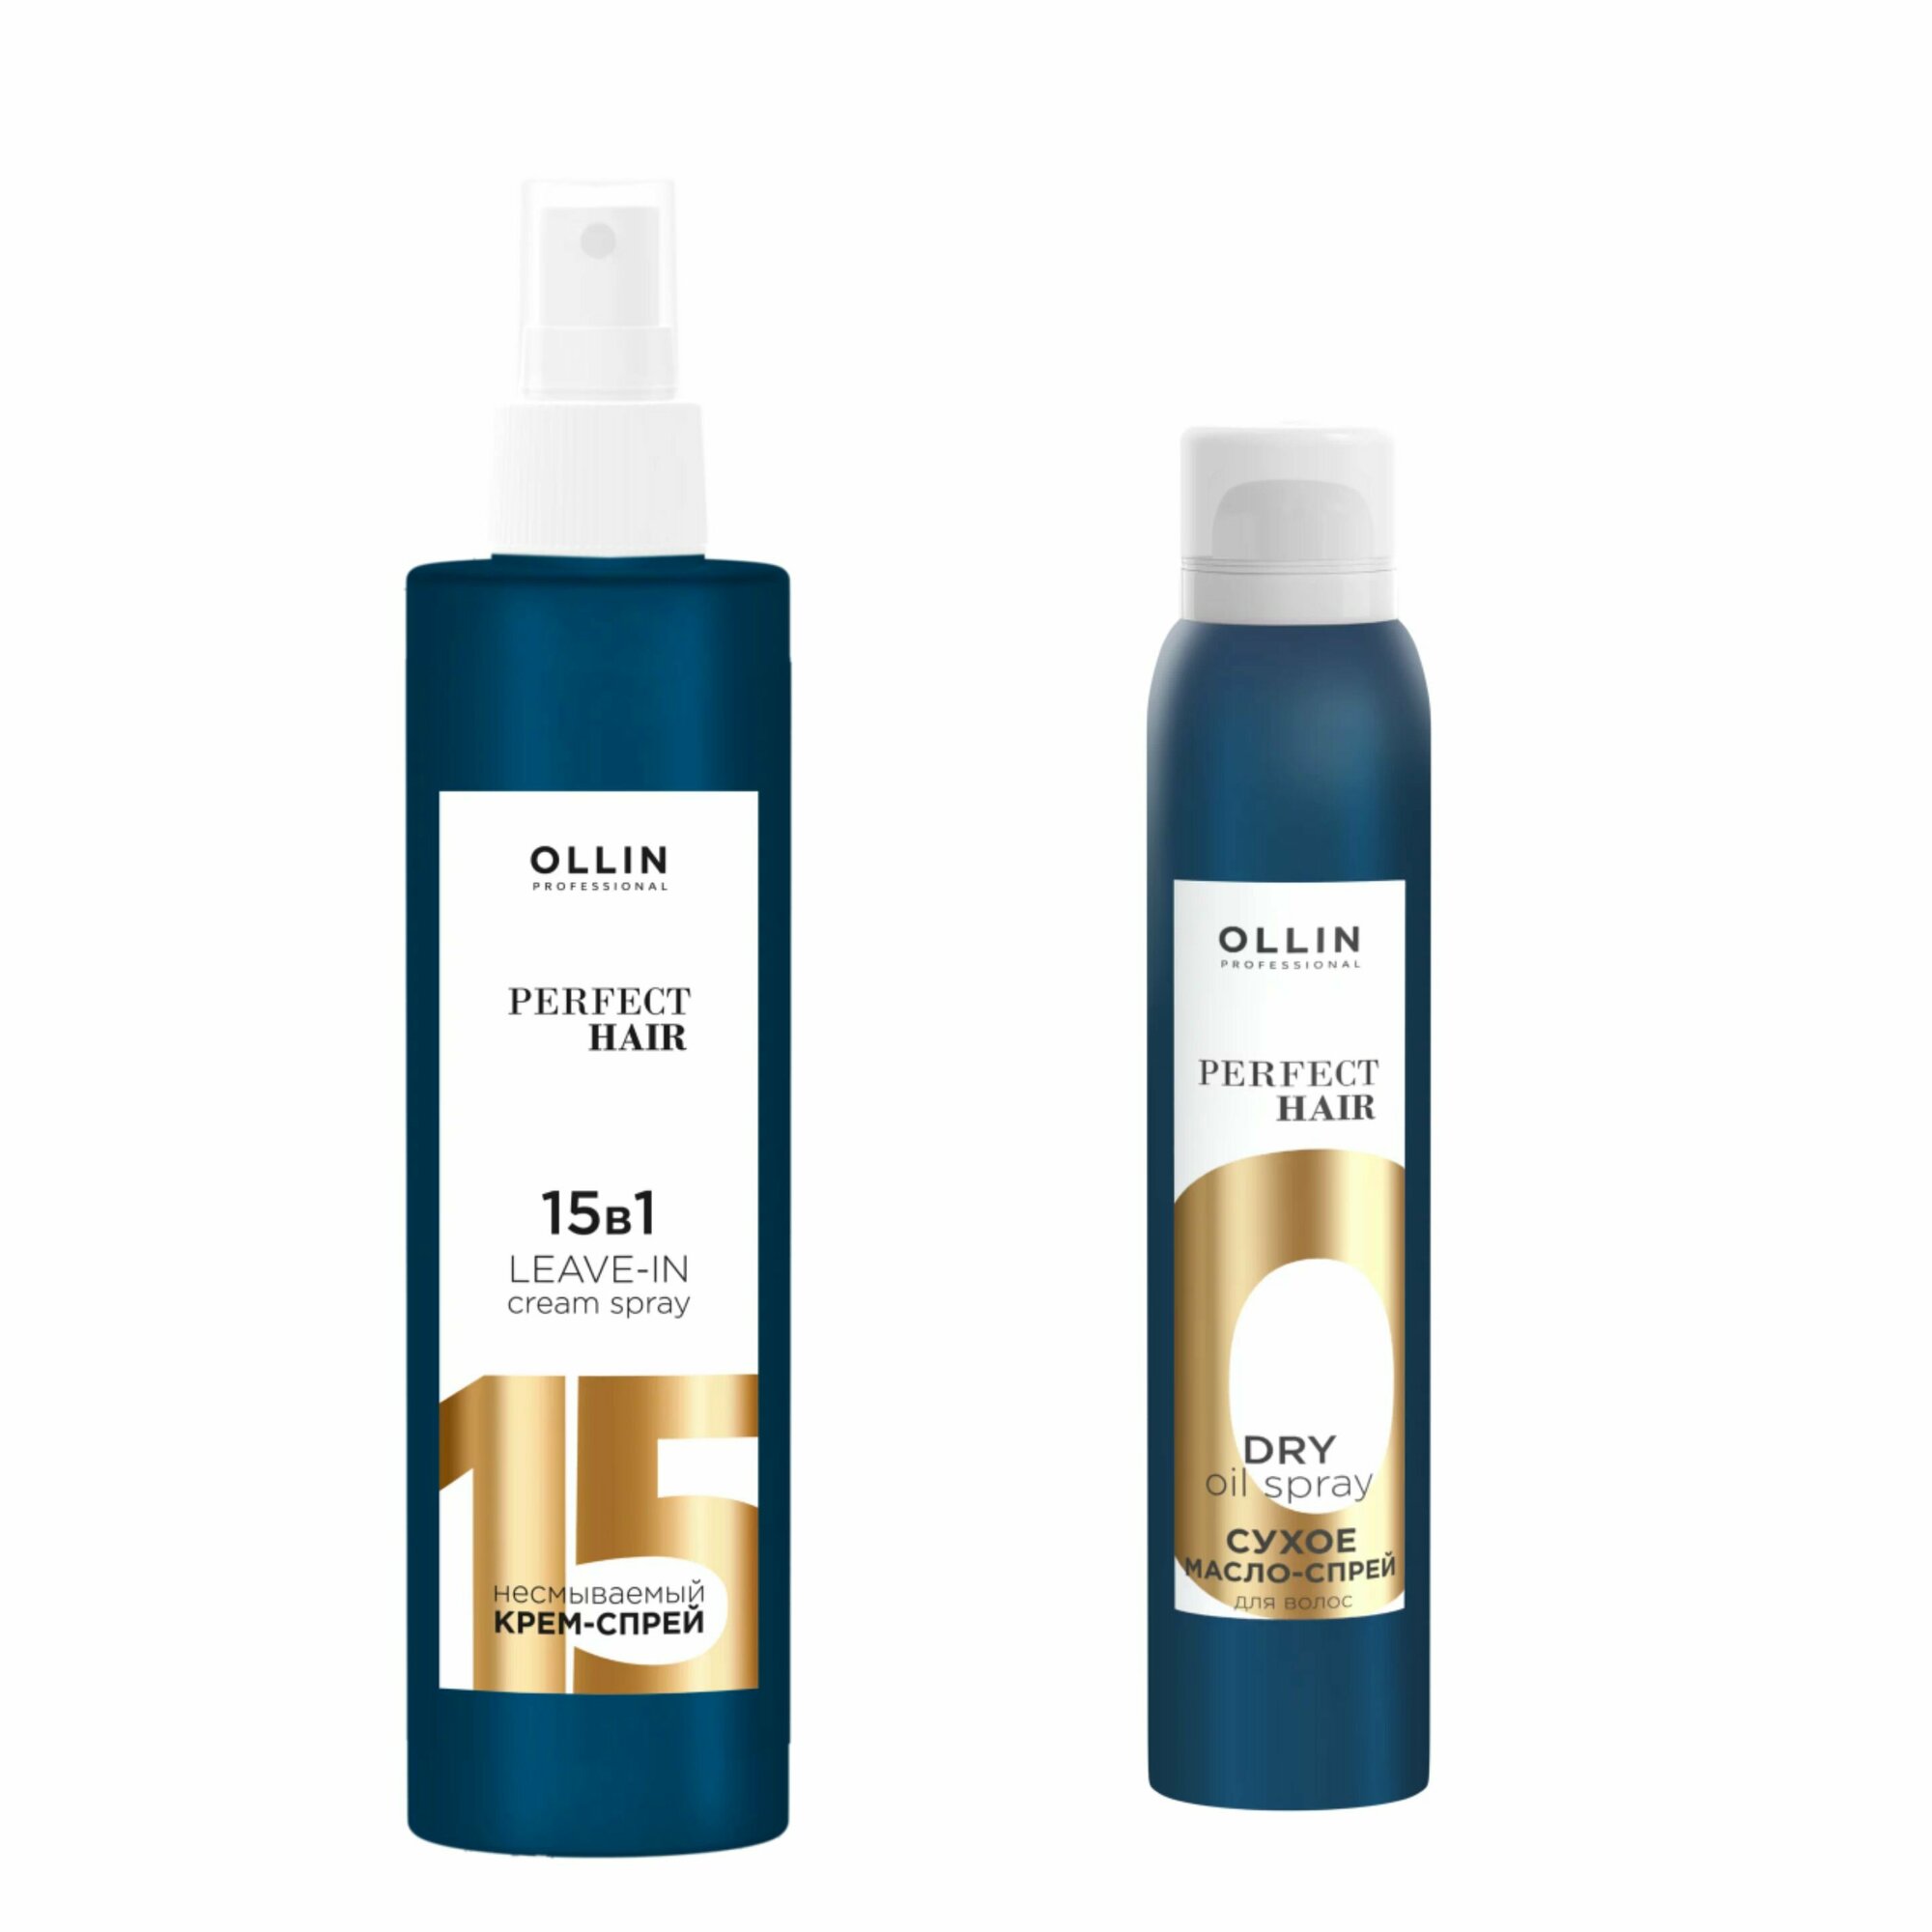 OLLIN Professional набор для волос: несмываемый крем-спрей 15 В 1, 250 мл + масло-спрей, 200 мл